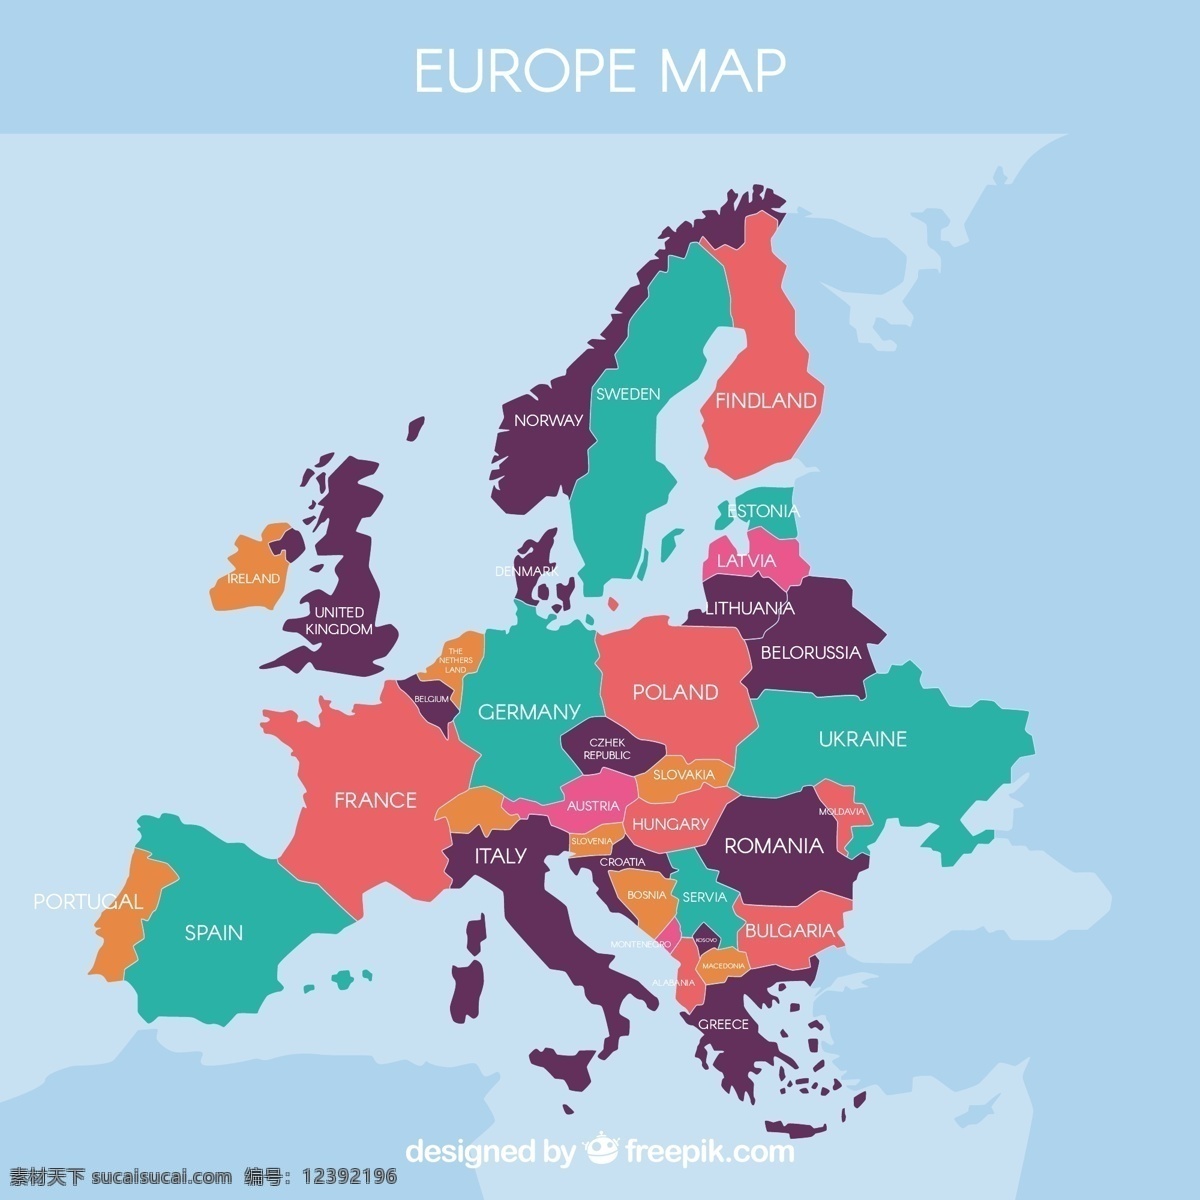 彩色 完整 欧洲 地图 矢量 欧洲地图 矢量素材